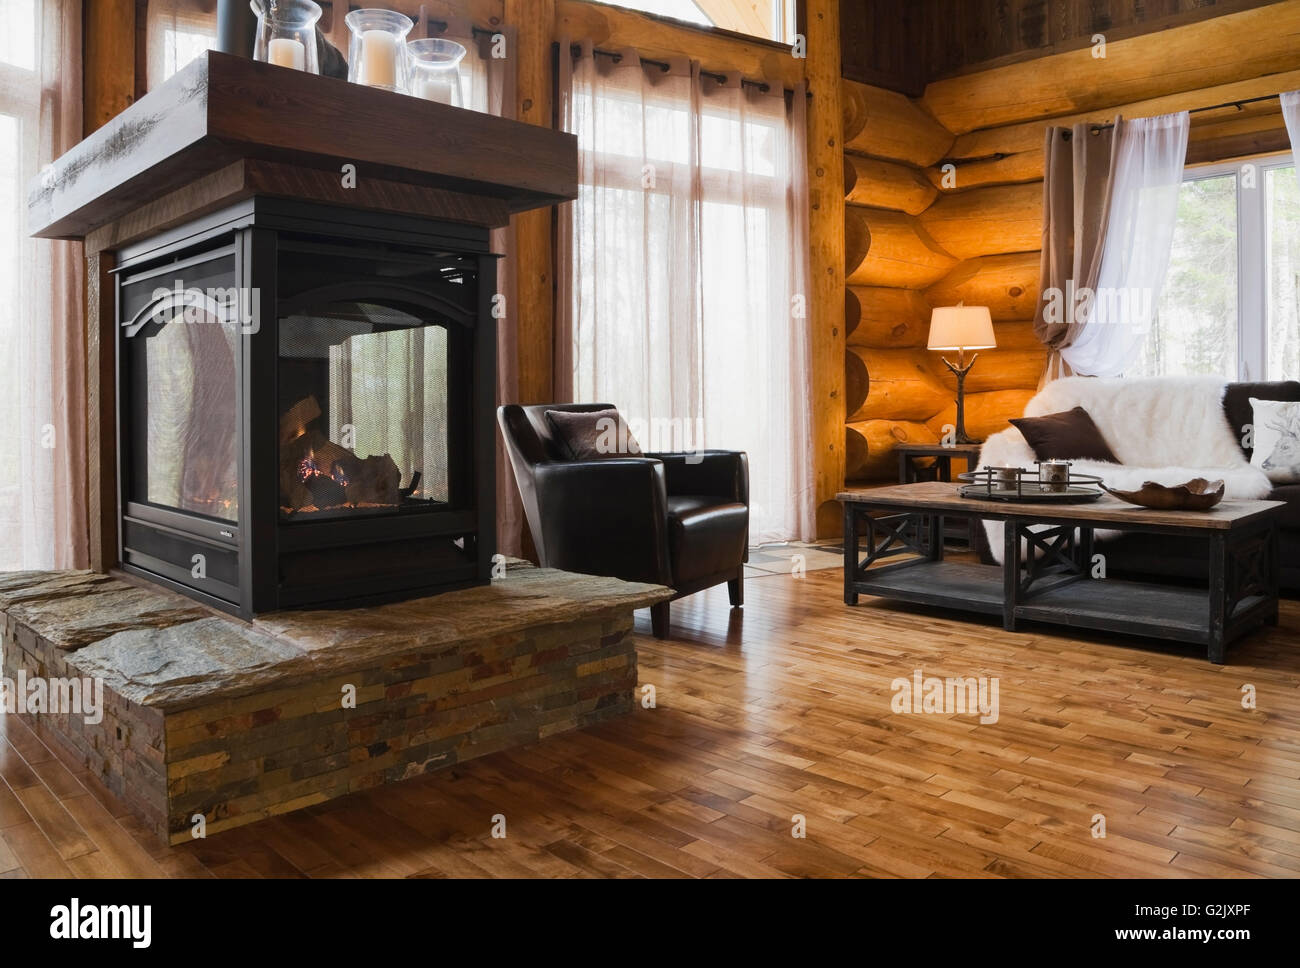 Gas-Kamin auf eine erhabene Steinplatte Basis braun Stuhl Couchtisch aus  Holz Ledersofa im Wohnzimmer in einem luxuriösen Ferienhaus Stockfotografie  - Alamy